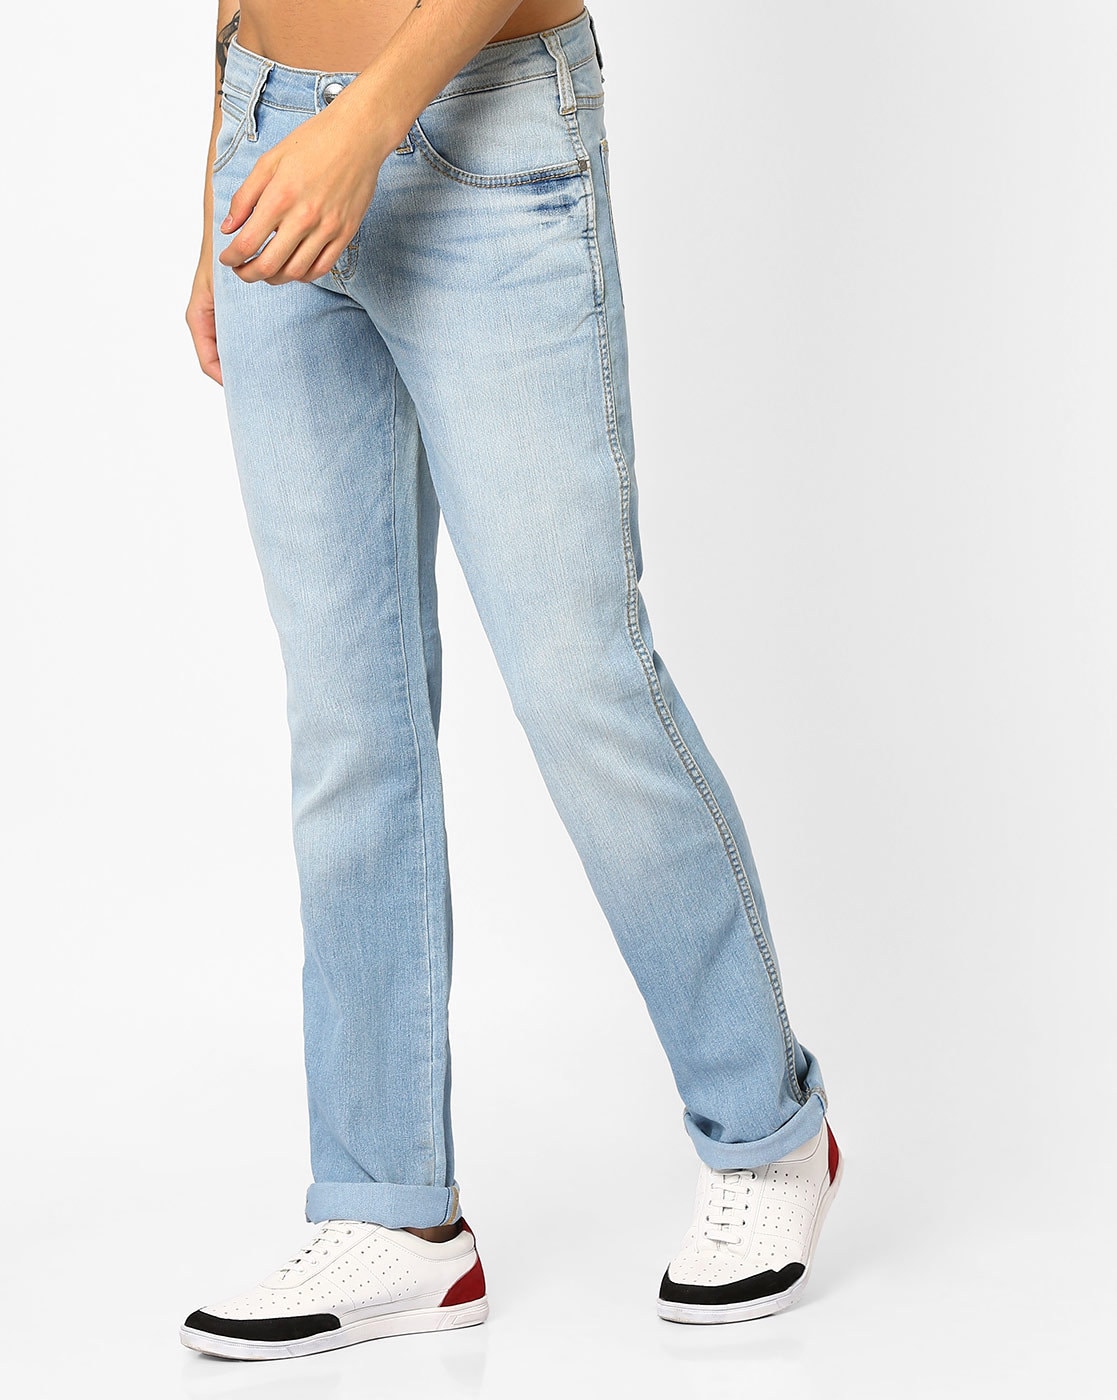 Buy Wrangler Dark Indigo Slim Fit Jeans for Mens Online @ Tata CLiQ